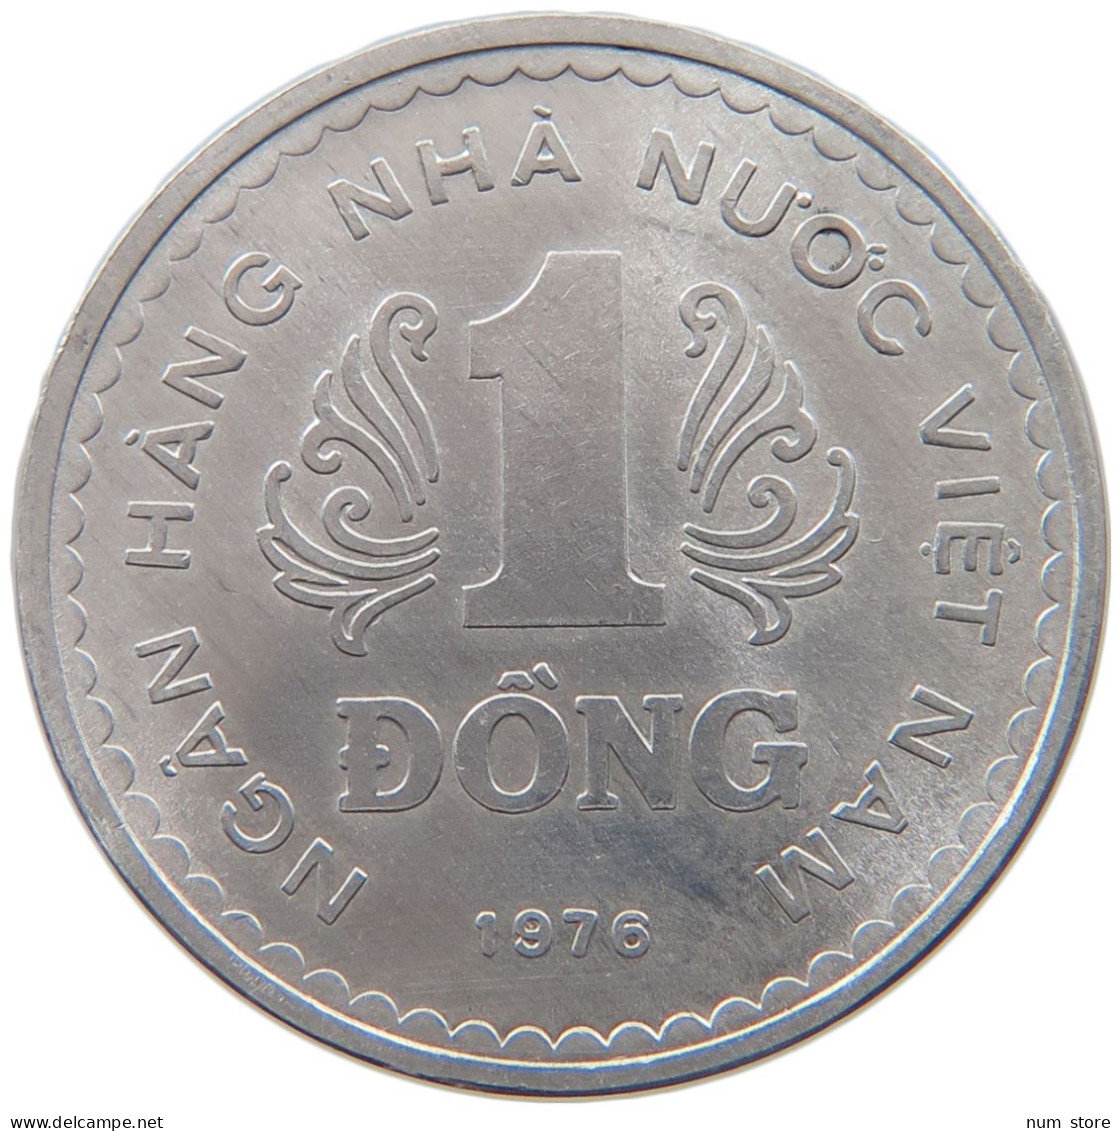 VIETNAM 1 DONG 1976 #s090 0043 - Viêt-Nam